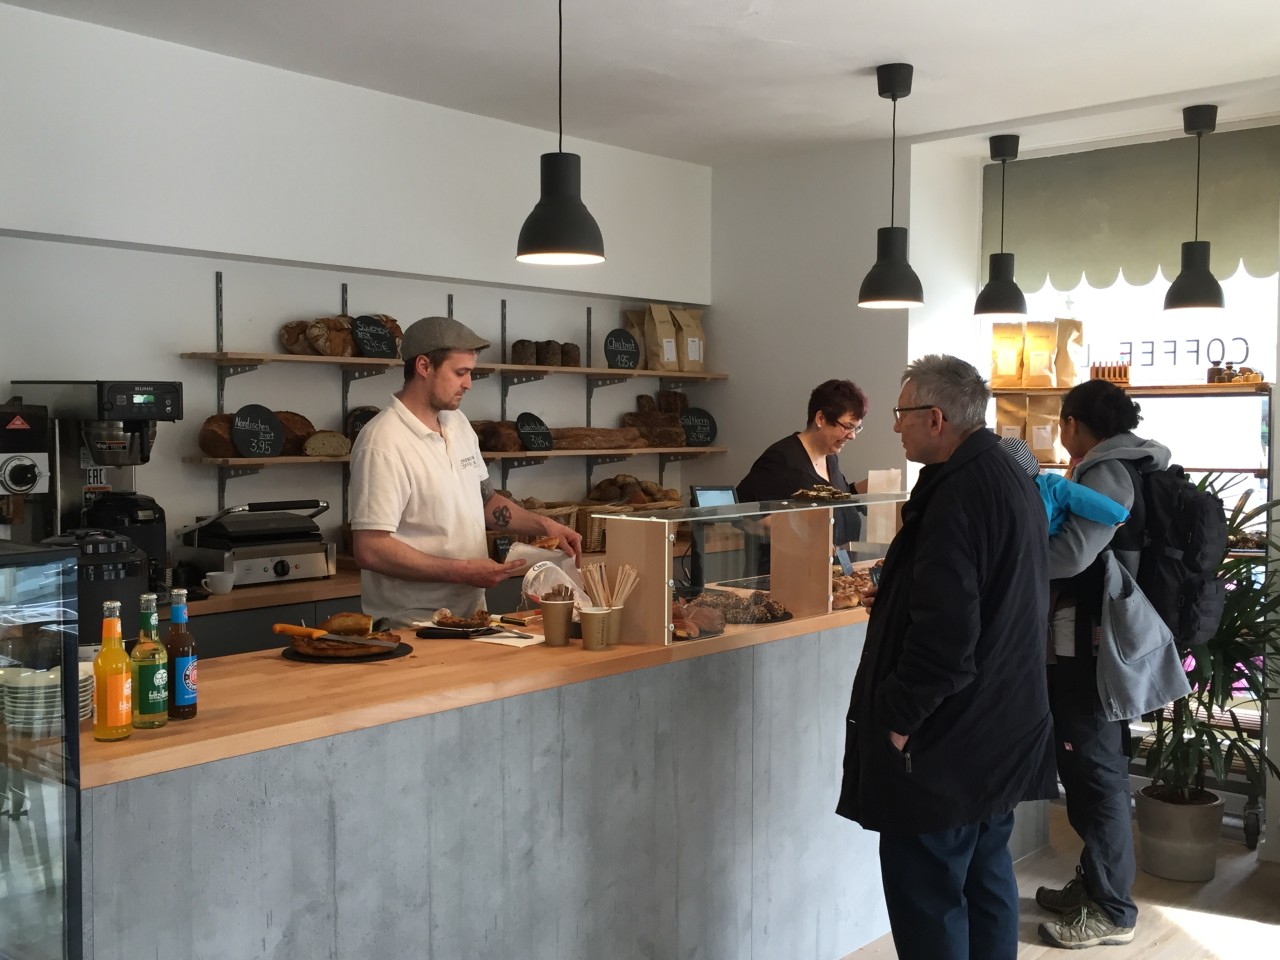 Die Kundschaft nimmt die neue Bäckerei mit Kopenhagen-Flair gut an.